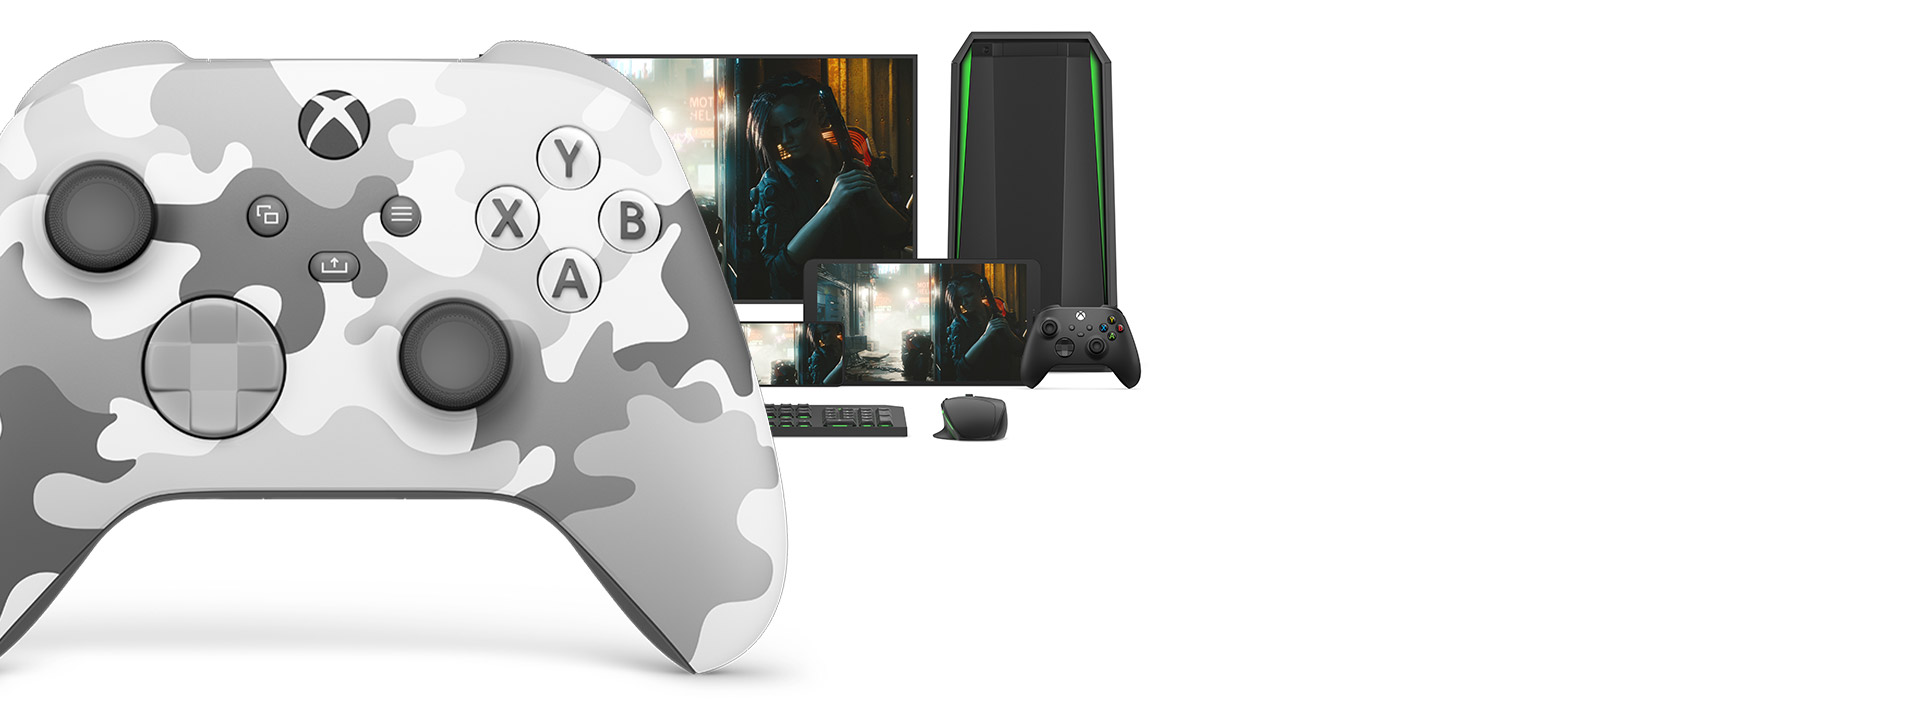 Vooraanzicht van de rechterkant van de Xbox draadloze controller – Arctic Camo Special Edition met verschillende speelbare platforms erachter